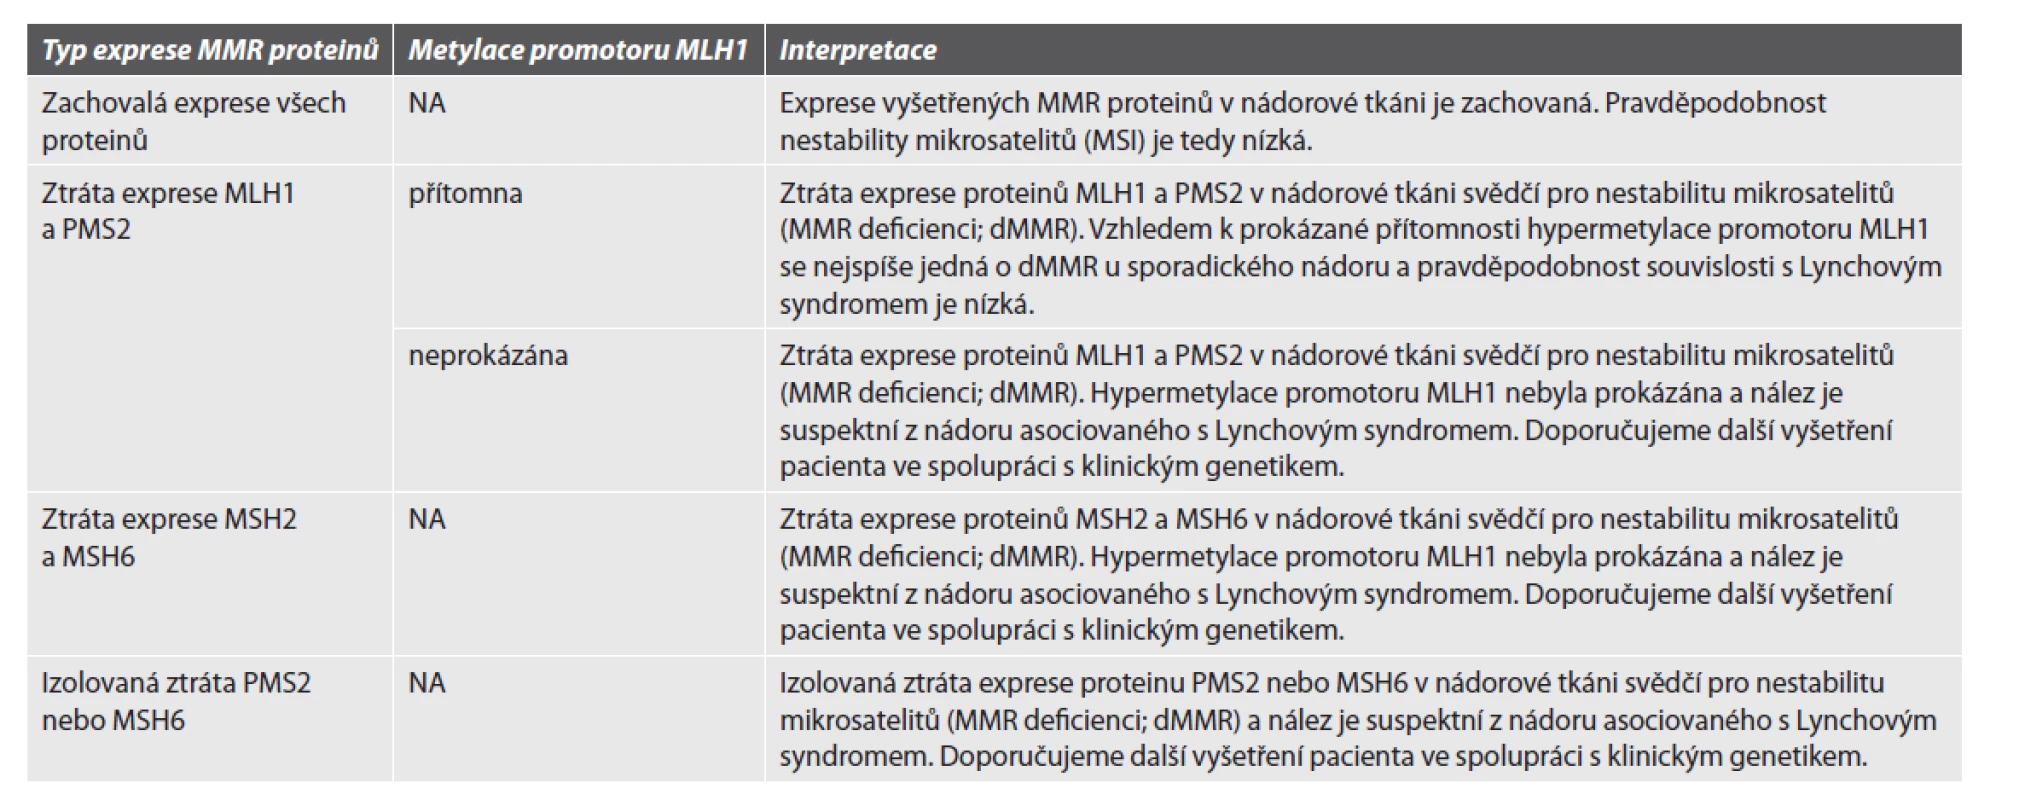 Hodnocení exprese MMR proteinů.